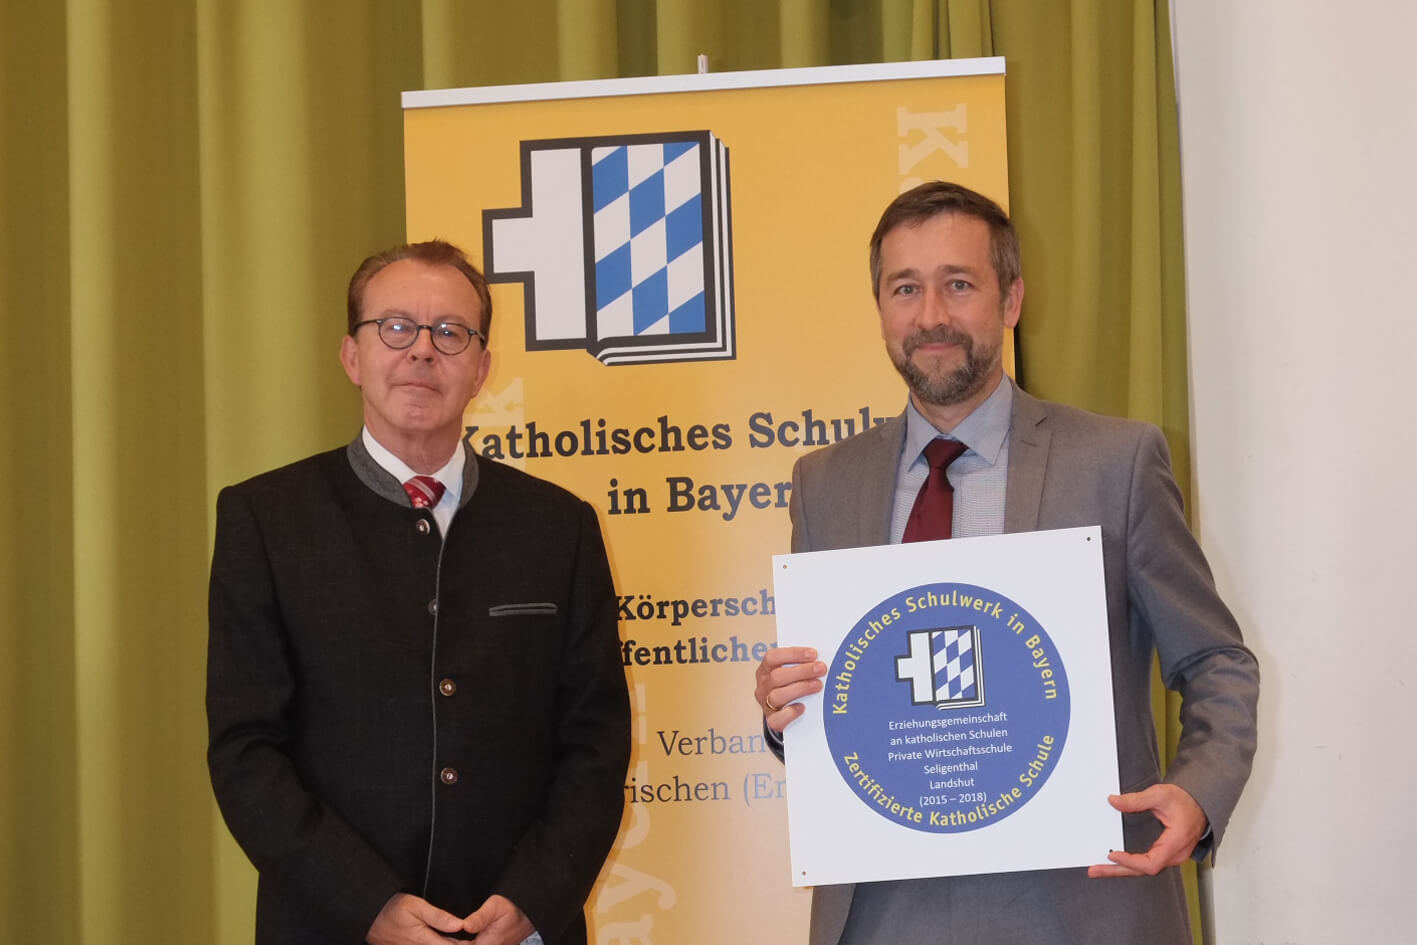 Dr. Hatzung, Direktor des Katholischen Schulwerks in Bayern und Herr Dr. Klosa bei der Übergabe der Auszeichnung